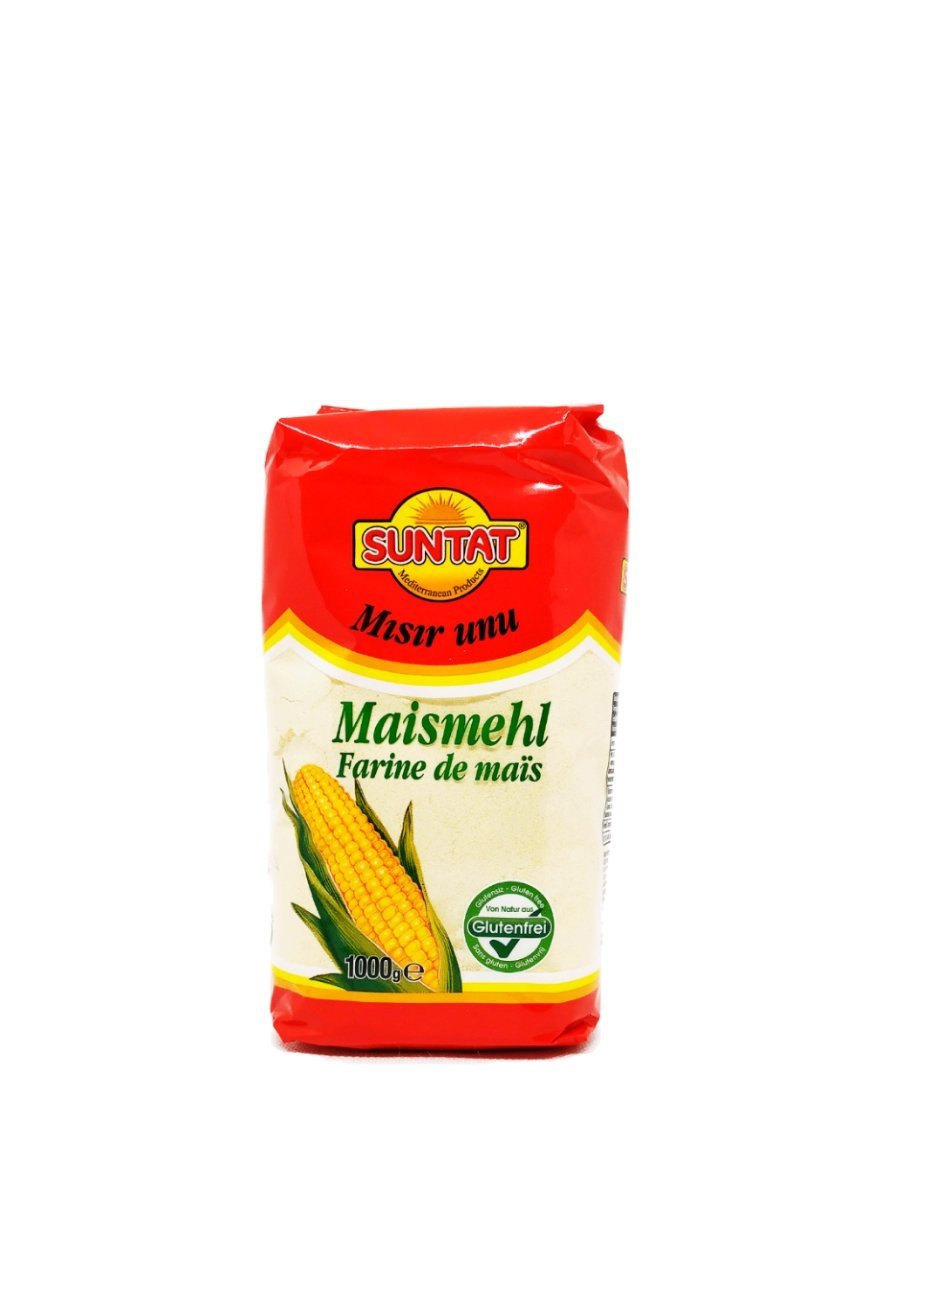 Produits orientaux en ligne : Suntat - Maismehl (Farine de maïs)